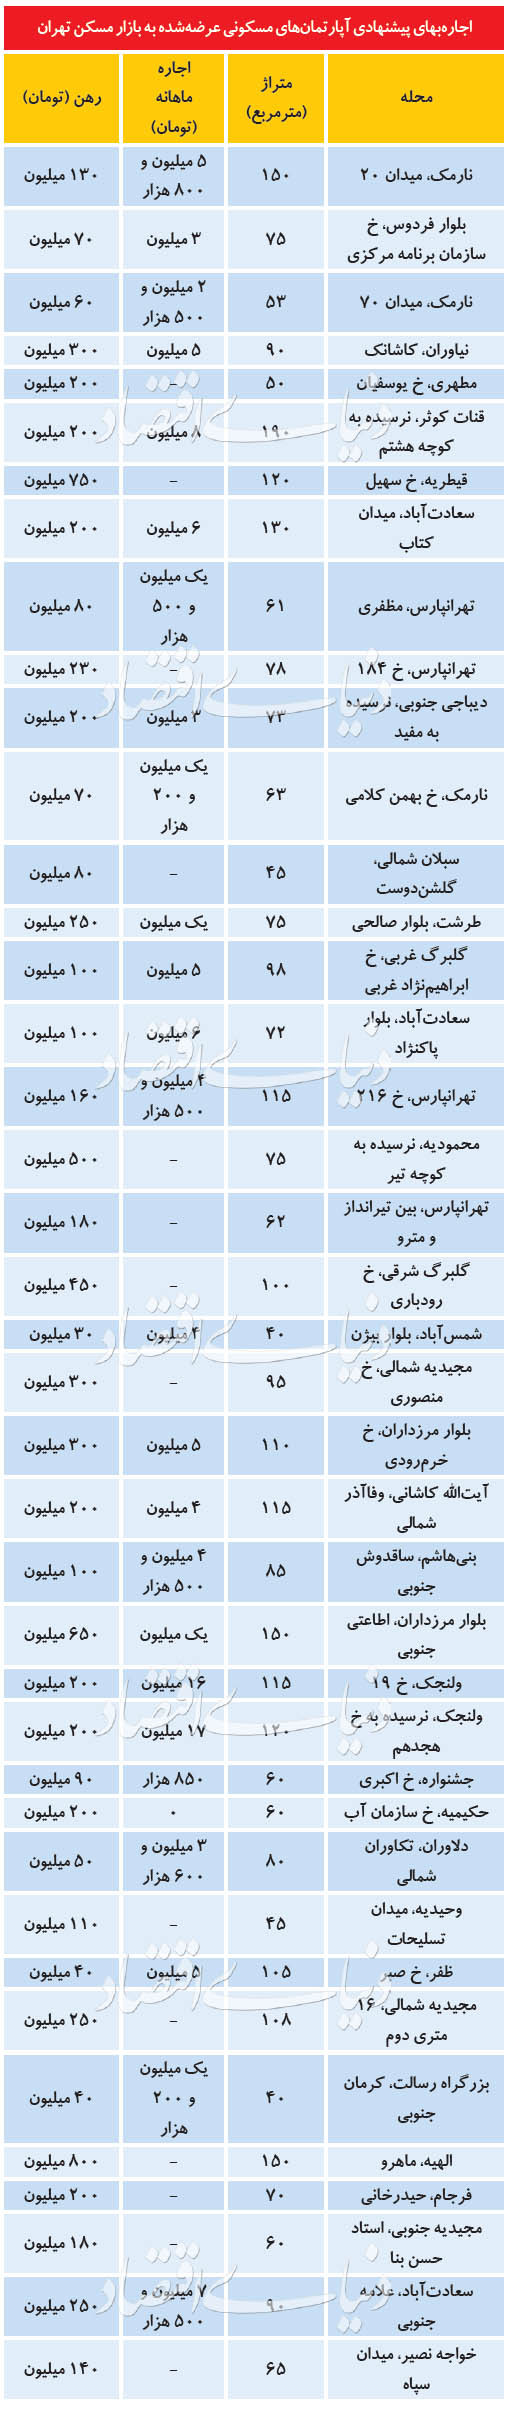 قیمت خرید خانه و نرخ اجاره مسکن در تهران امروز چهارشنبه 11 تیر 99